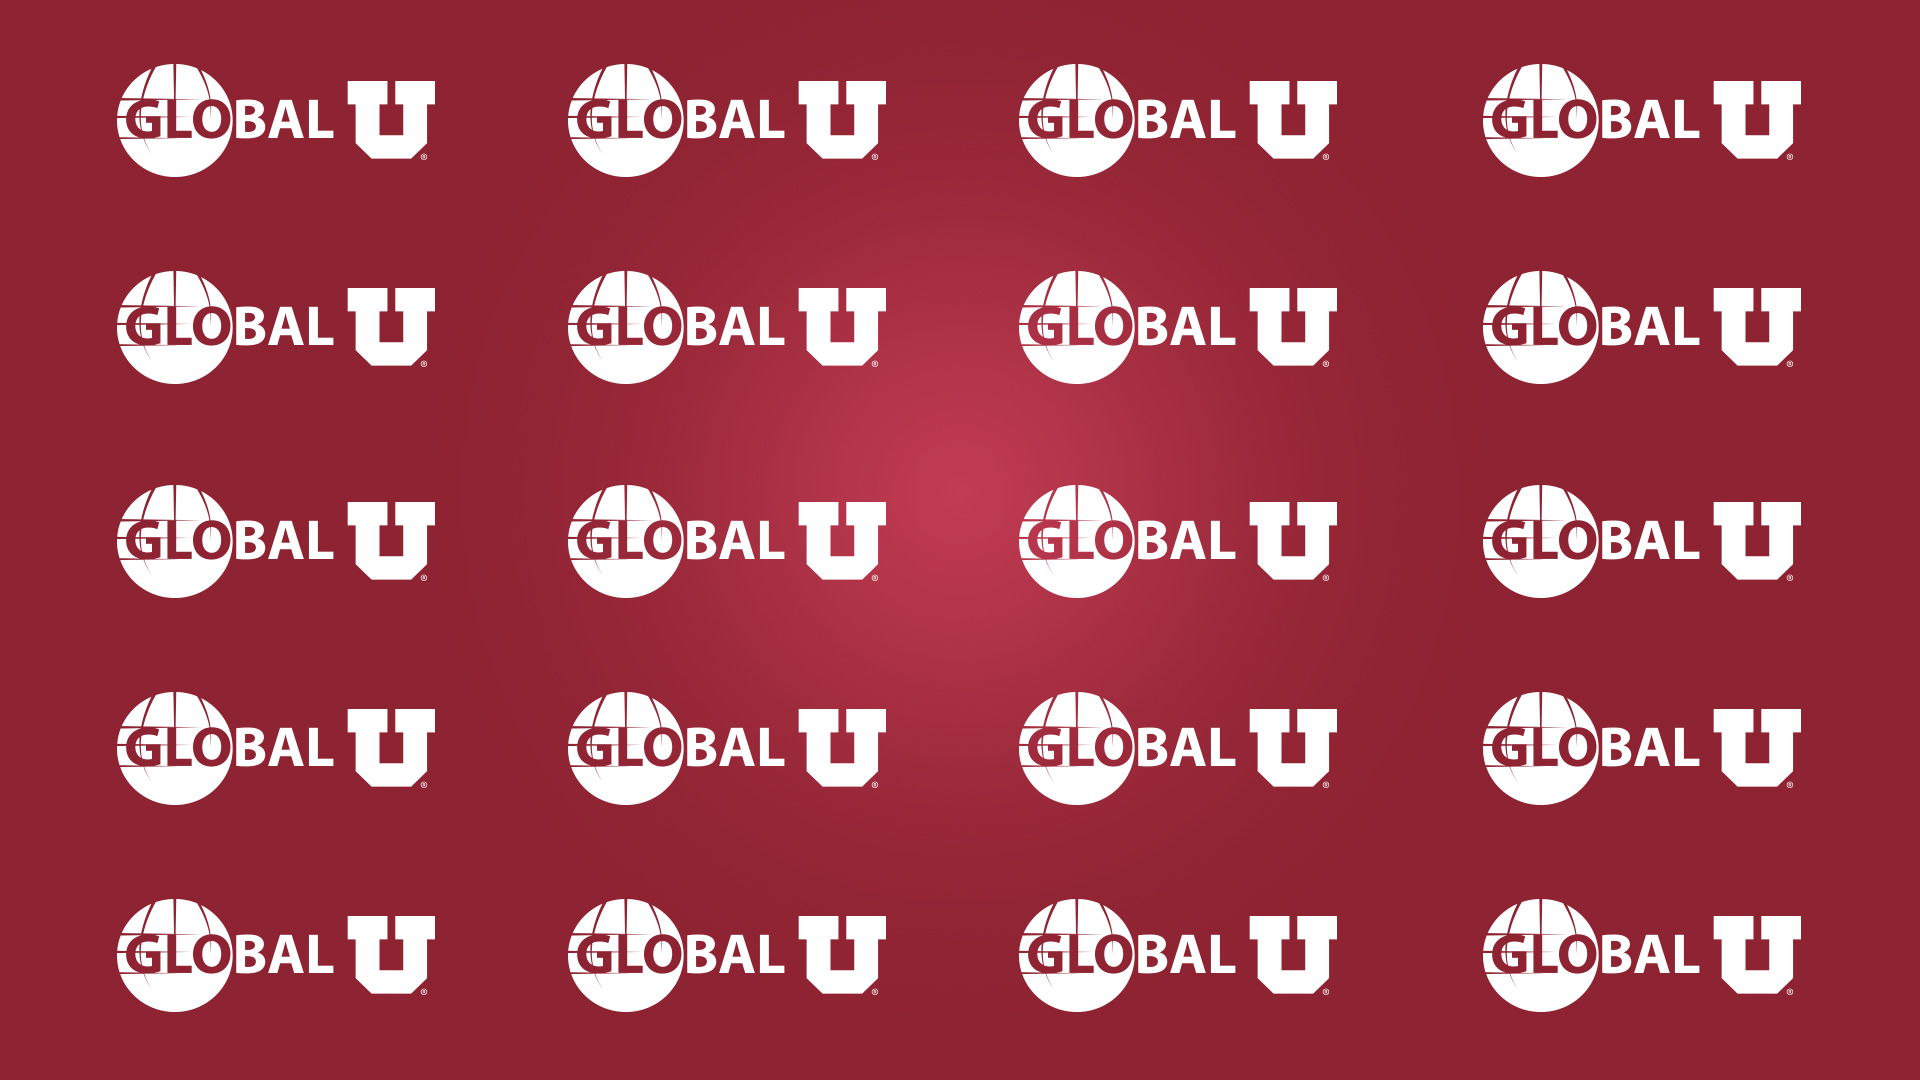 Global U logo zoom background